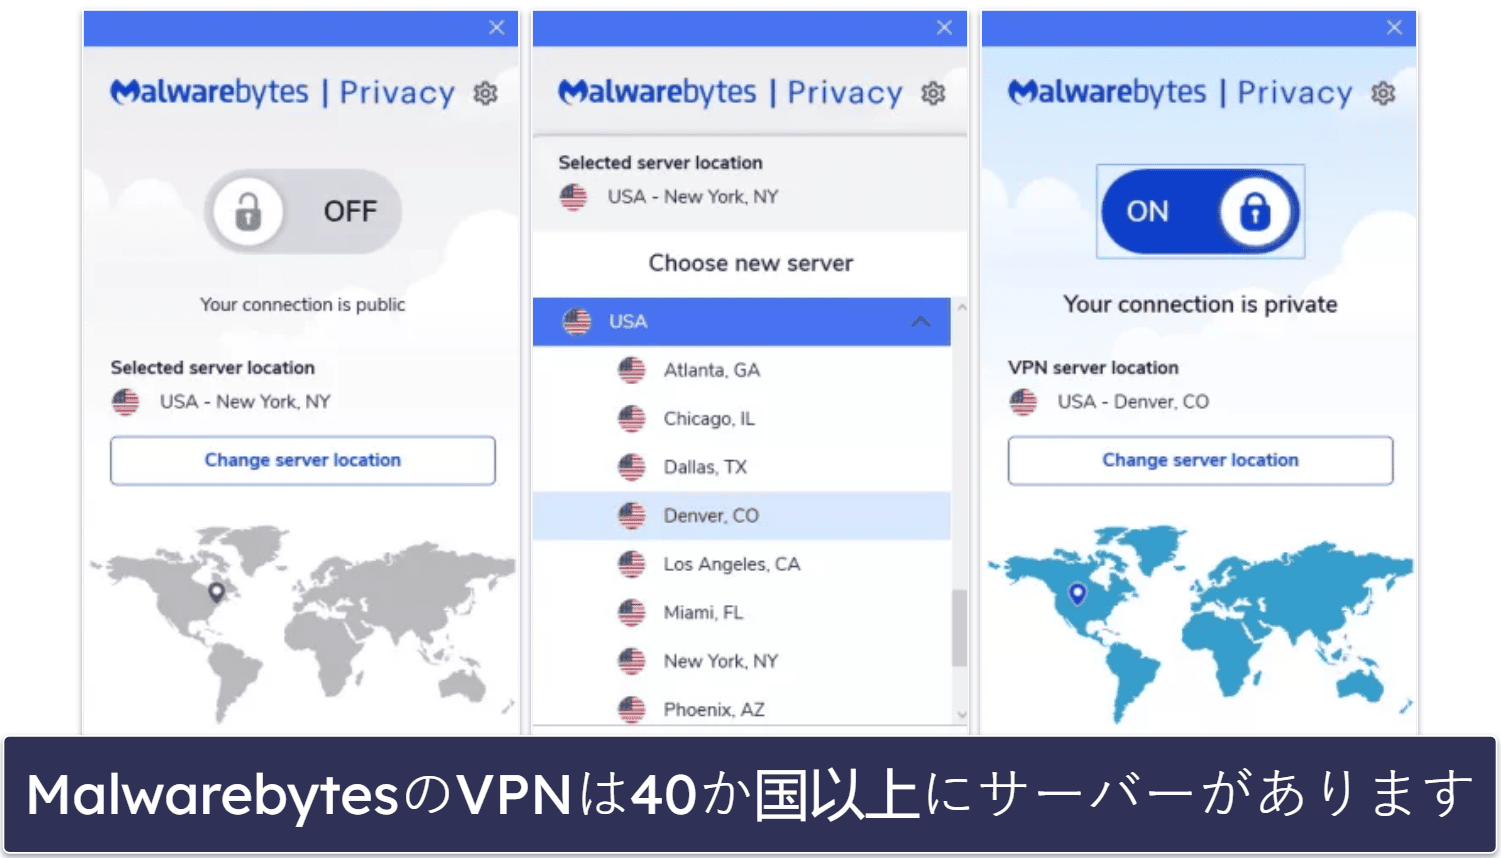 6. Malwarebytes：ミニマリストなセキュリティソフトで、高速VPN付き